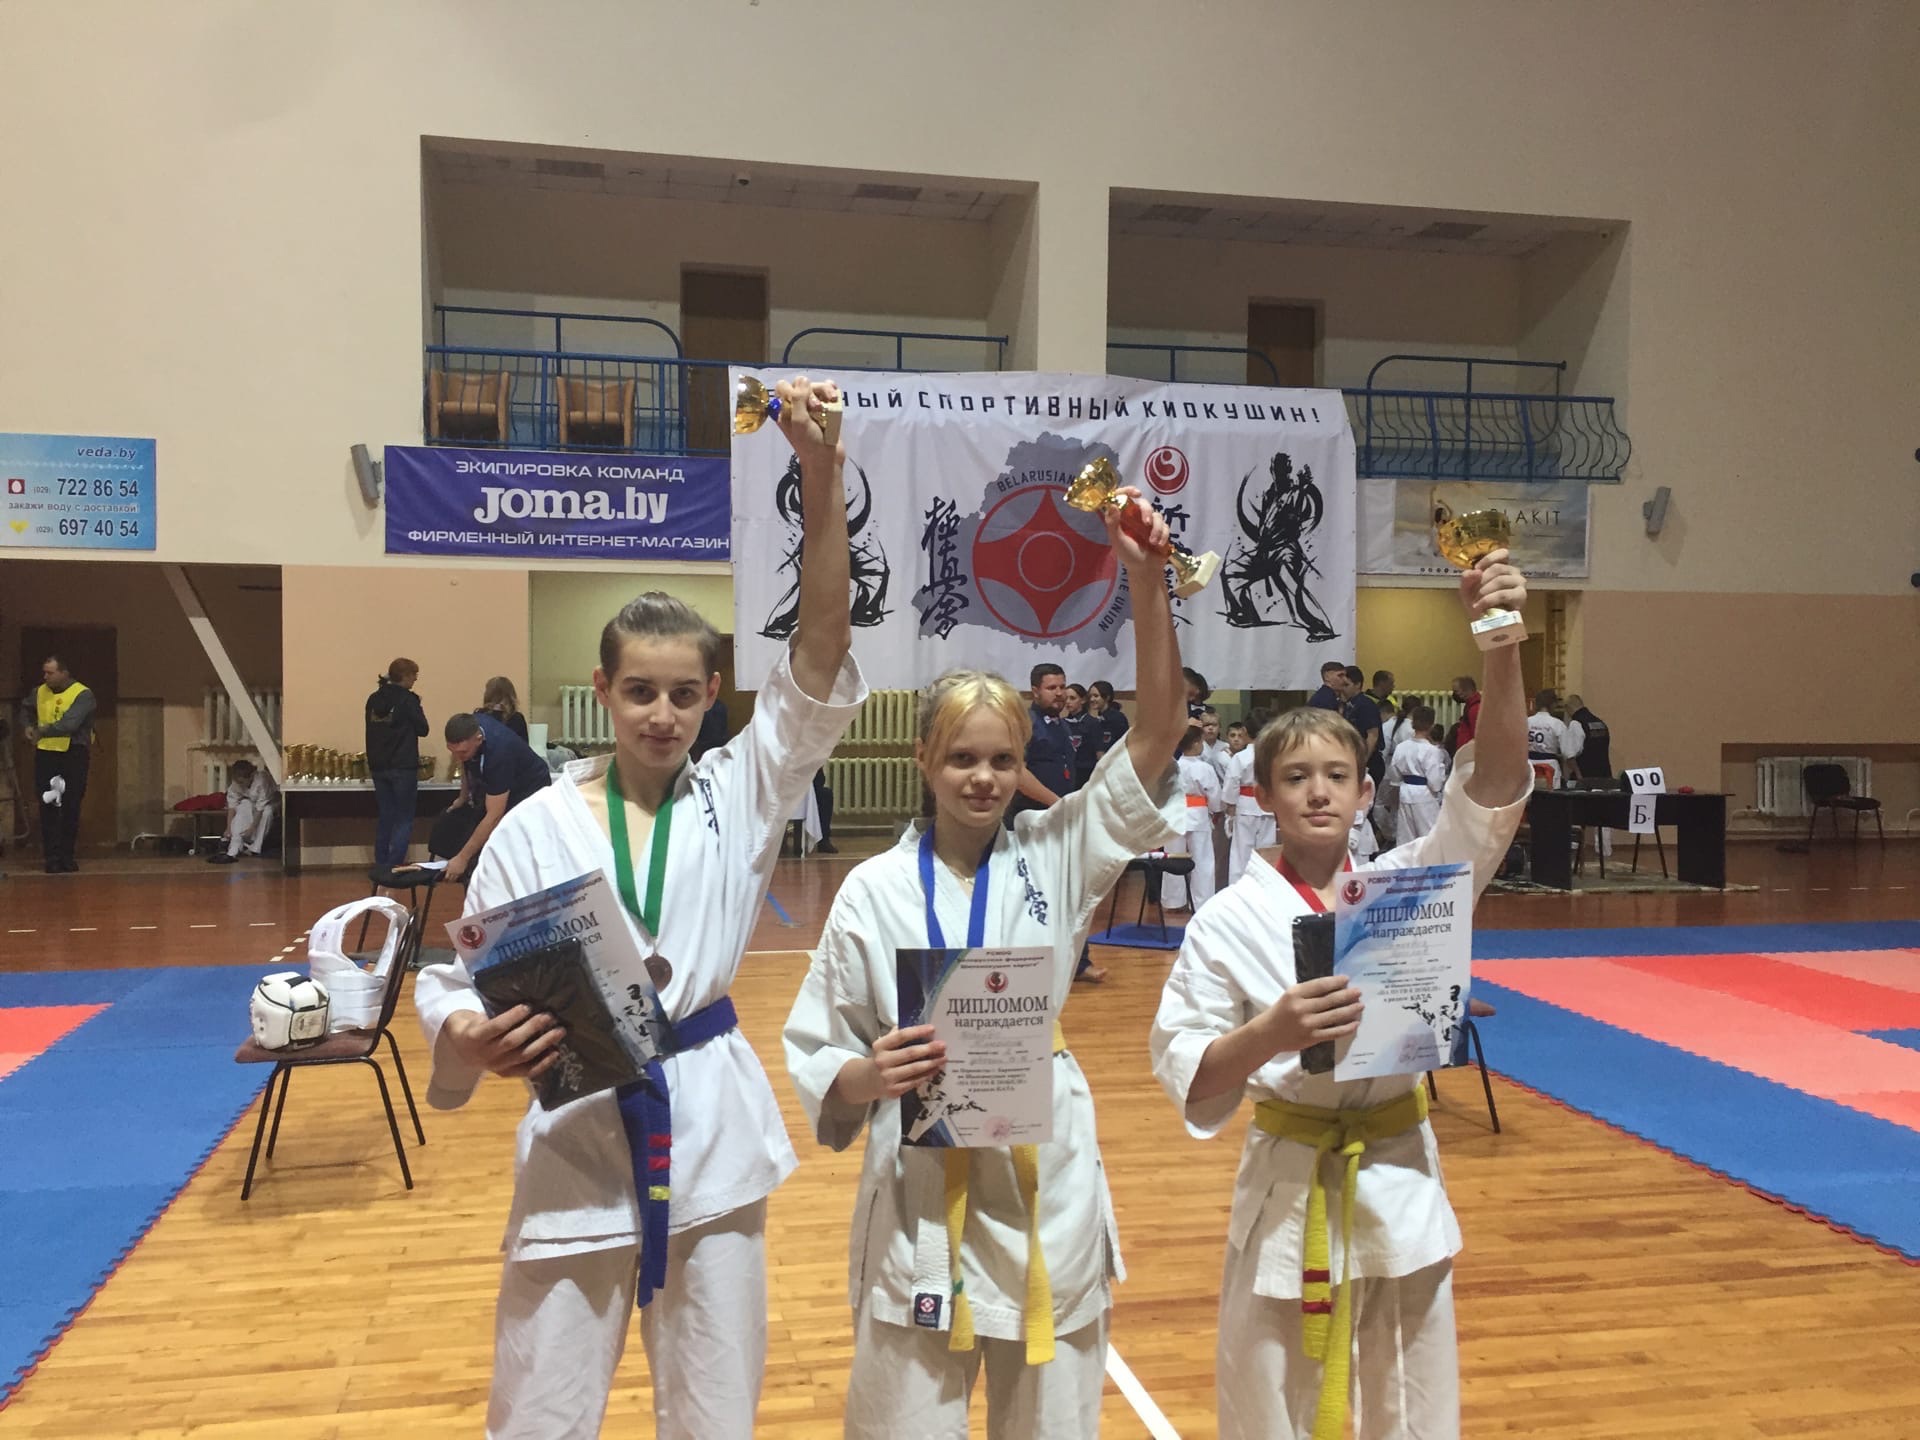 Сморгонские каратисты завоевали множество медалей на республиканском турнире по каратэ в Барановичах